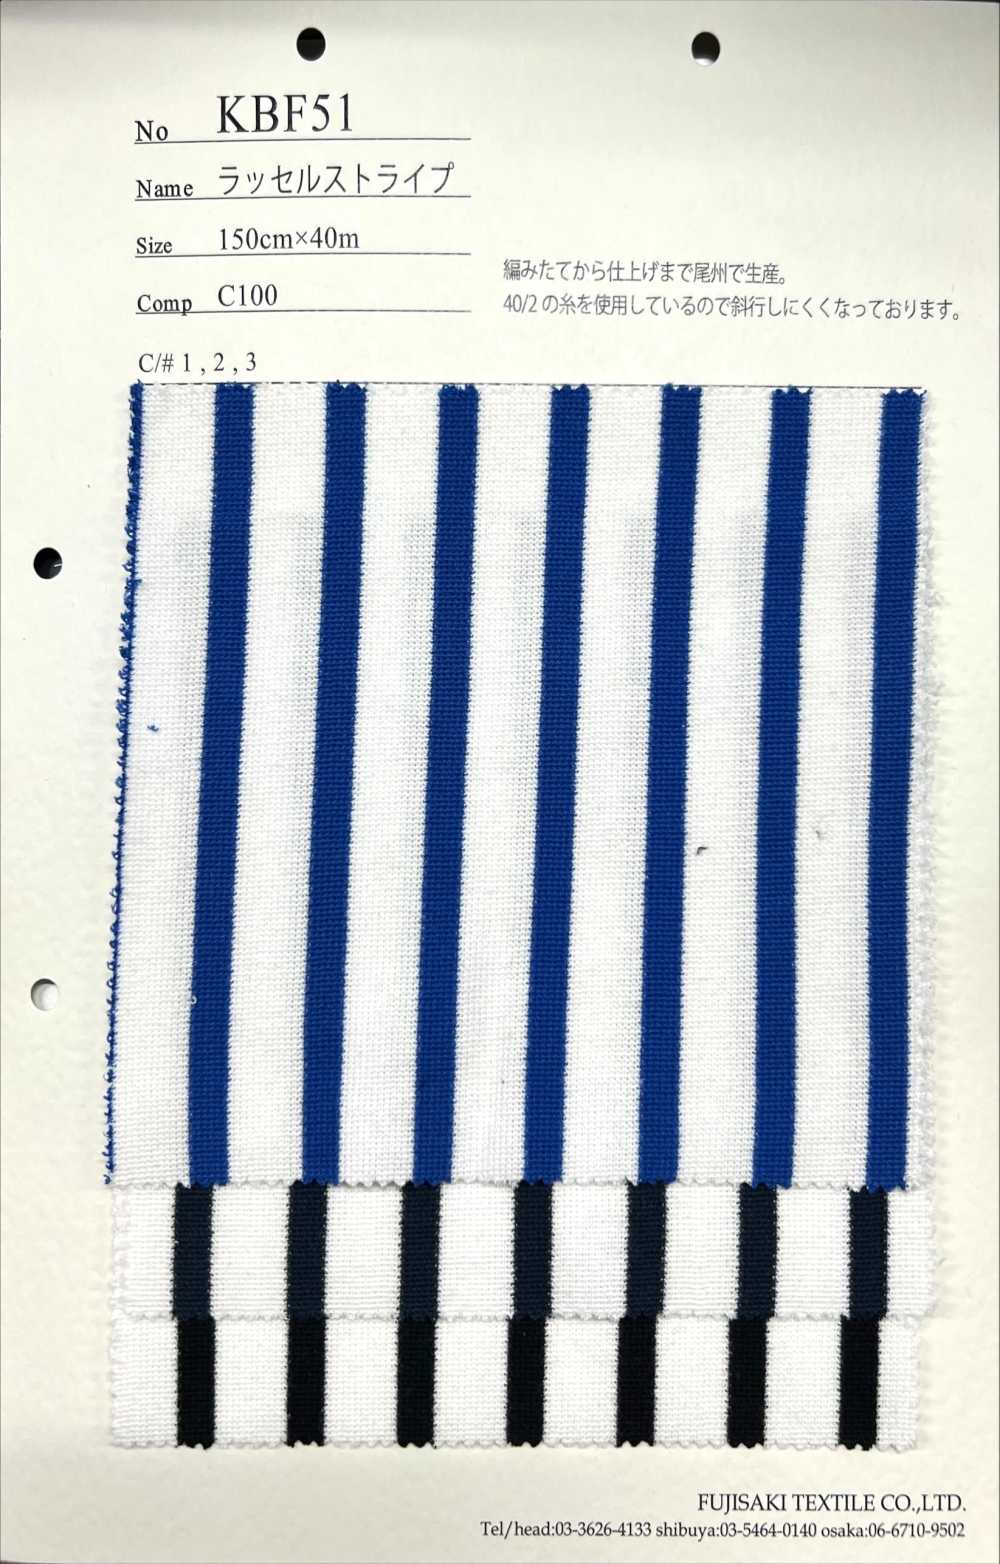 KBF51 Kẻ Sọc Dệt Kim đan Dọc[Vải] Fujisaki Textile